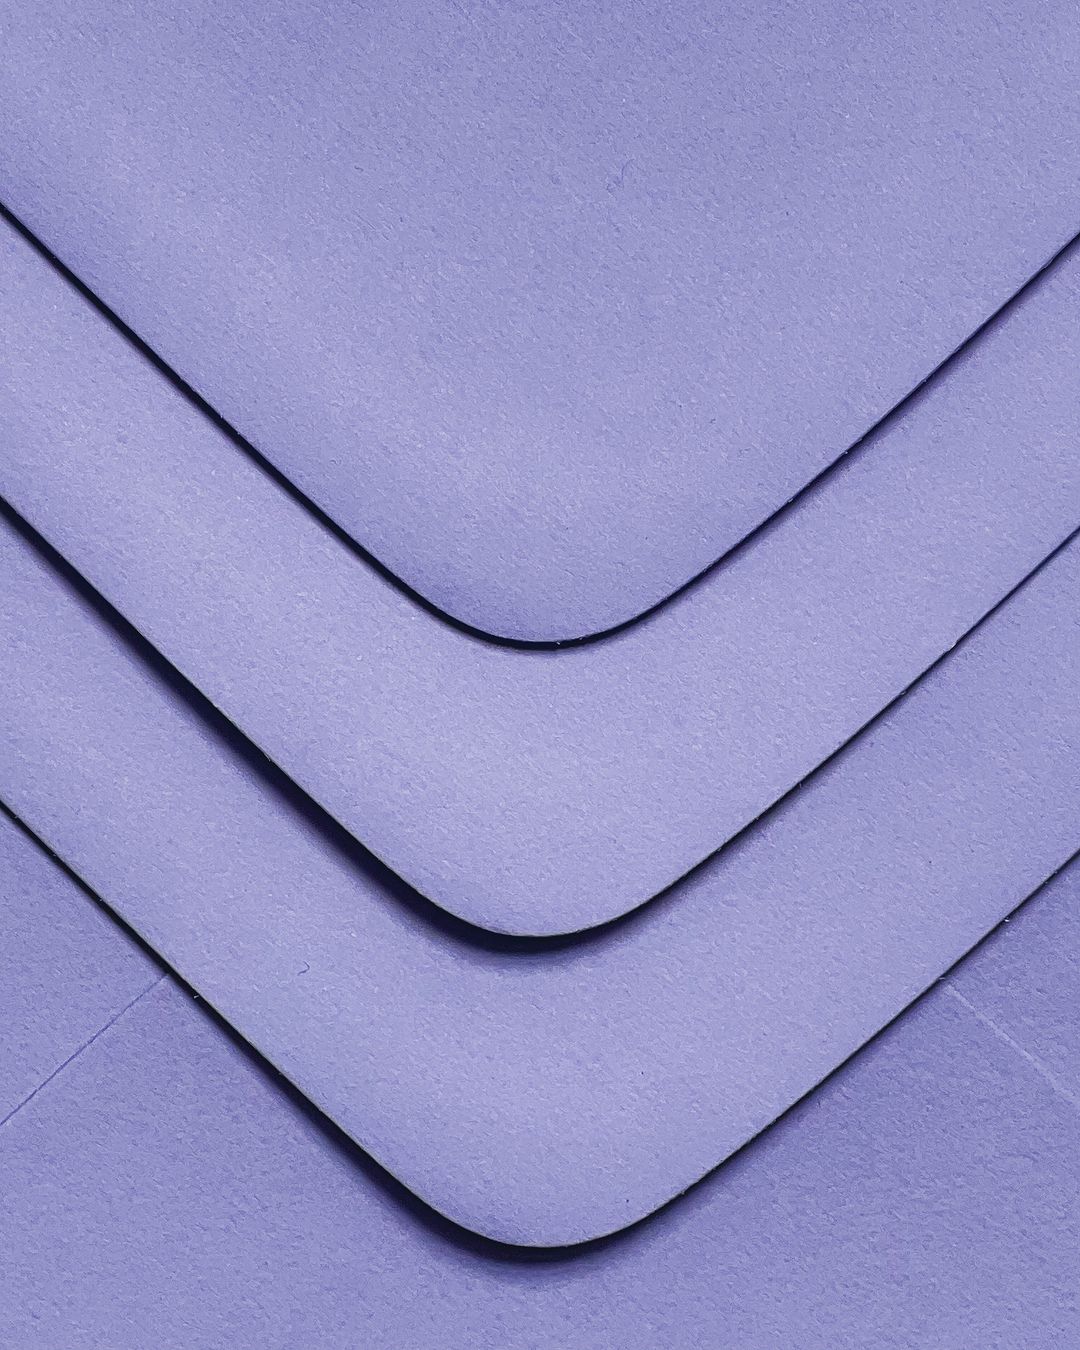 Blank or Printed Envelopes